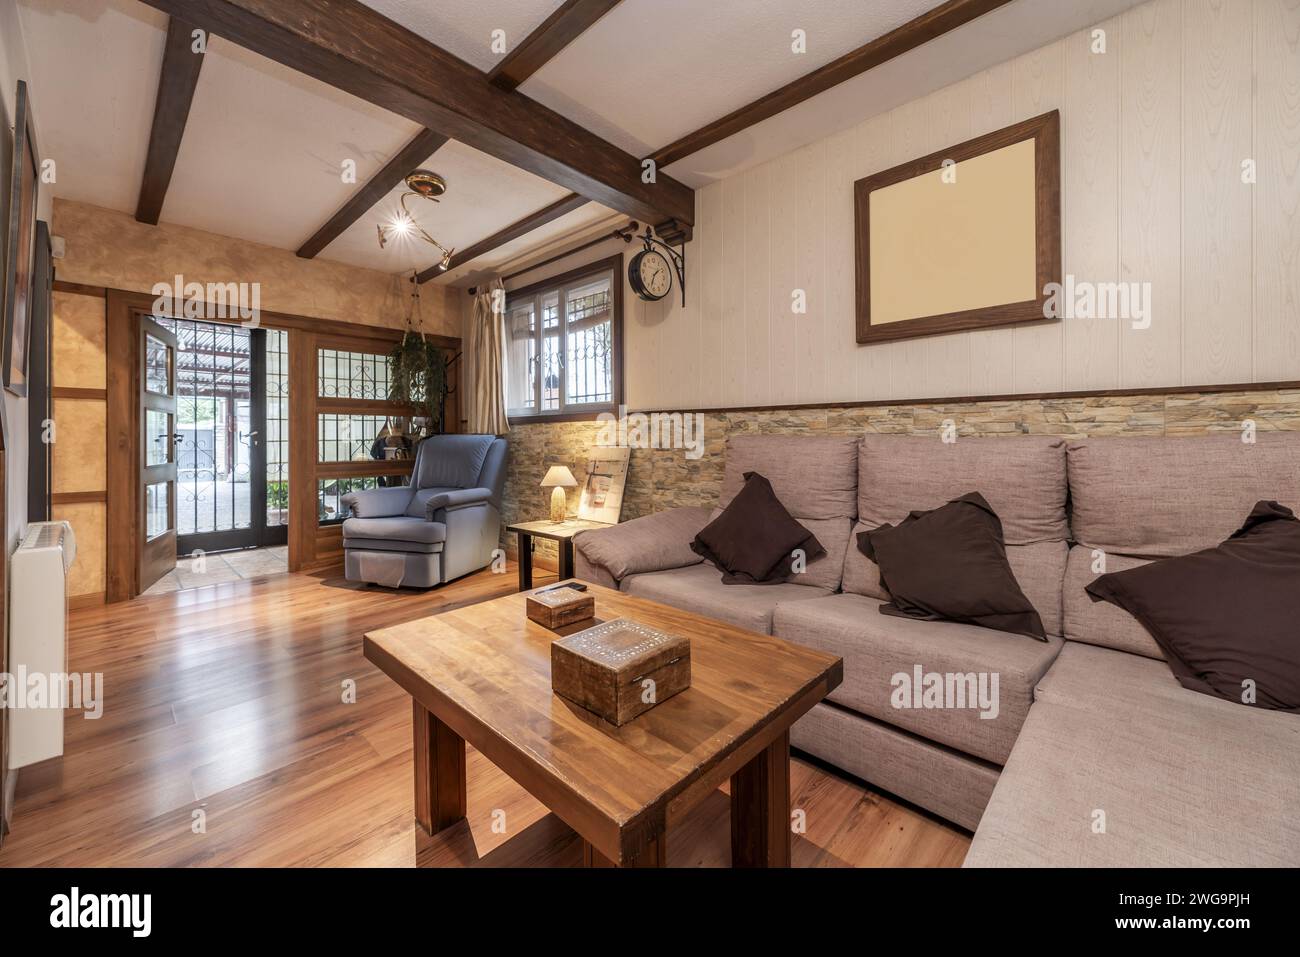 Un petit salon au rez-de-chaussée d'une maison individuelle avec canapés rembourrés en tissu, planchers en bois et fausses poutres au plafond Banque D'Images